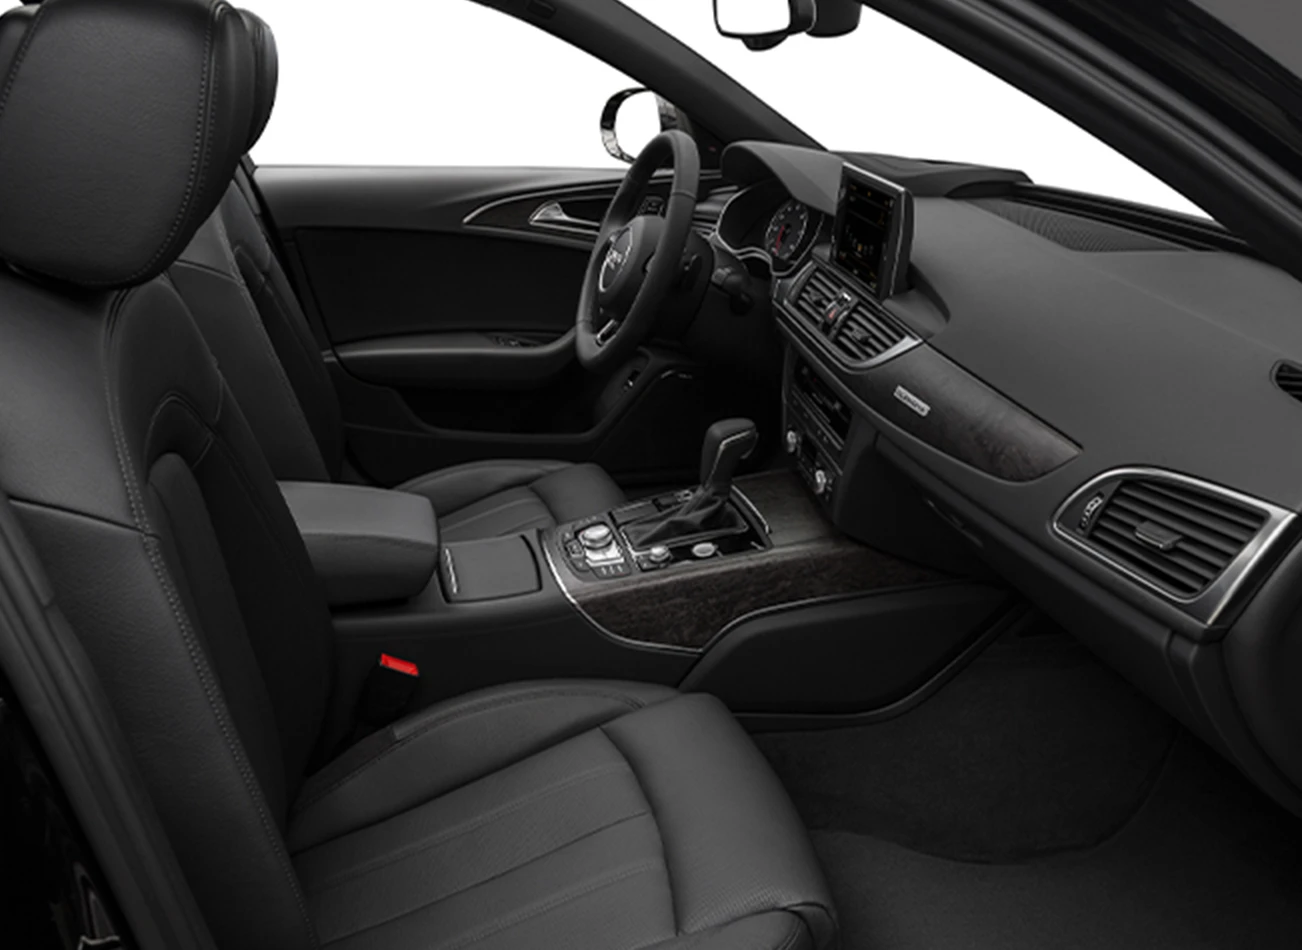 2017 Audi A6 Review: Interior | CarMax